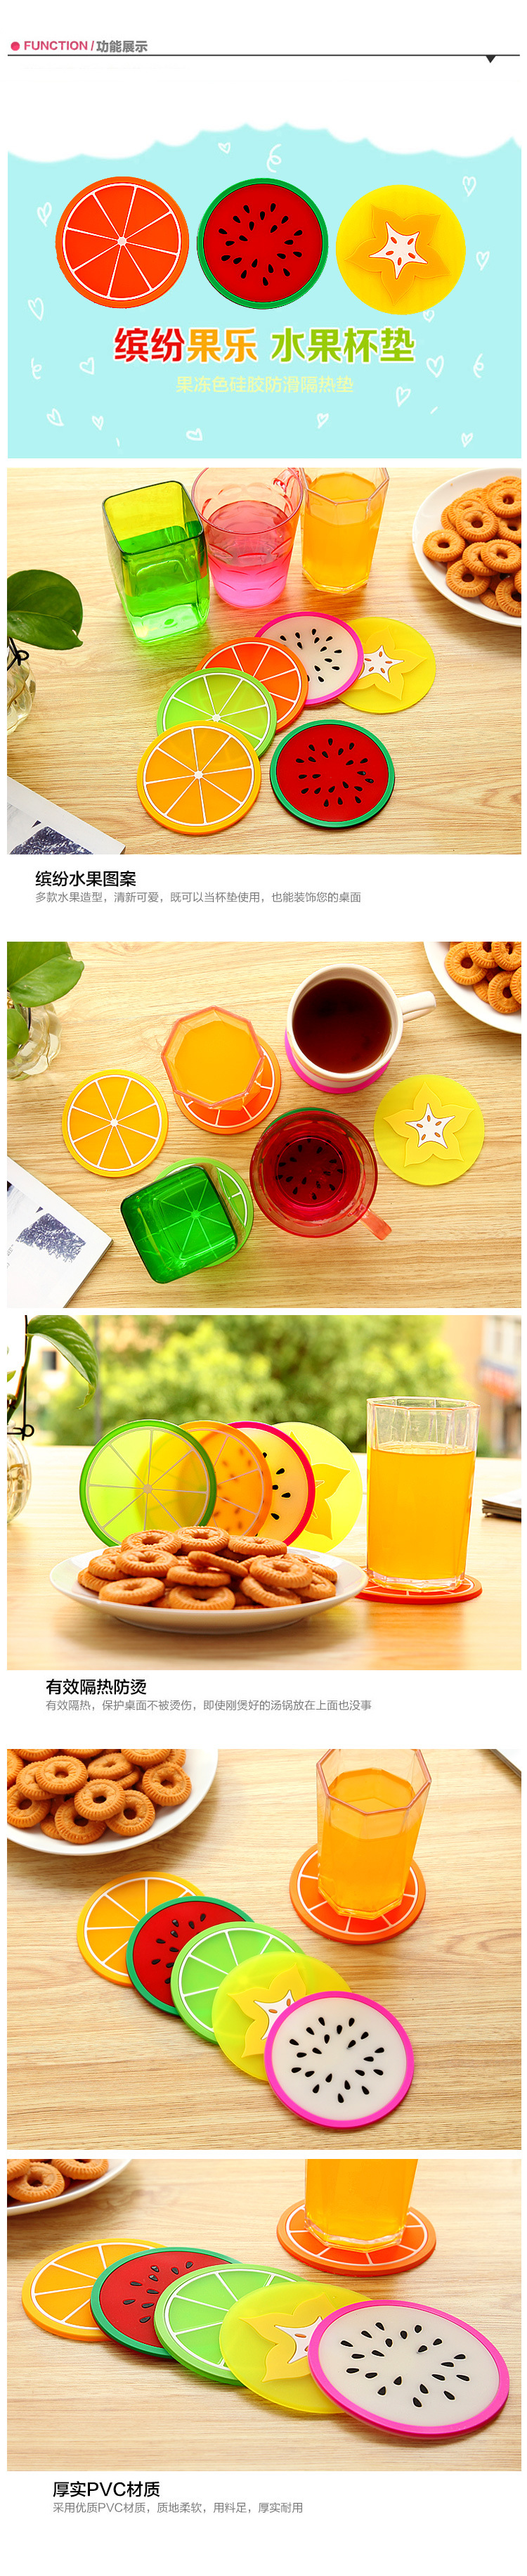 繽紛果凍色水果造型杯墊 矽膠杯墊 創意防滑隔熱墊 茶杯墊0